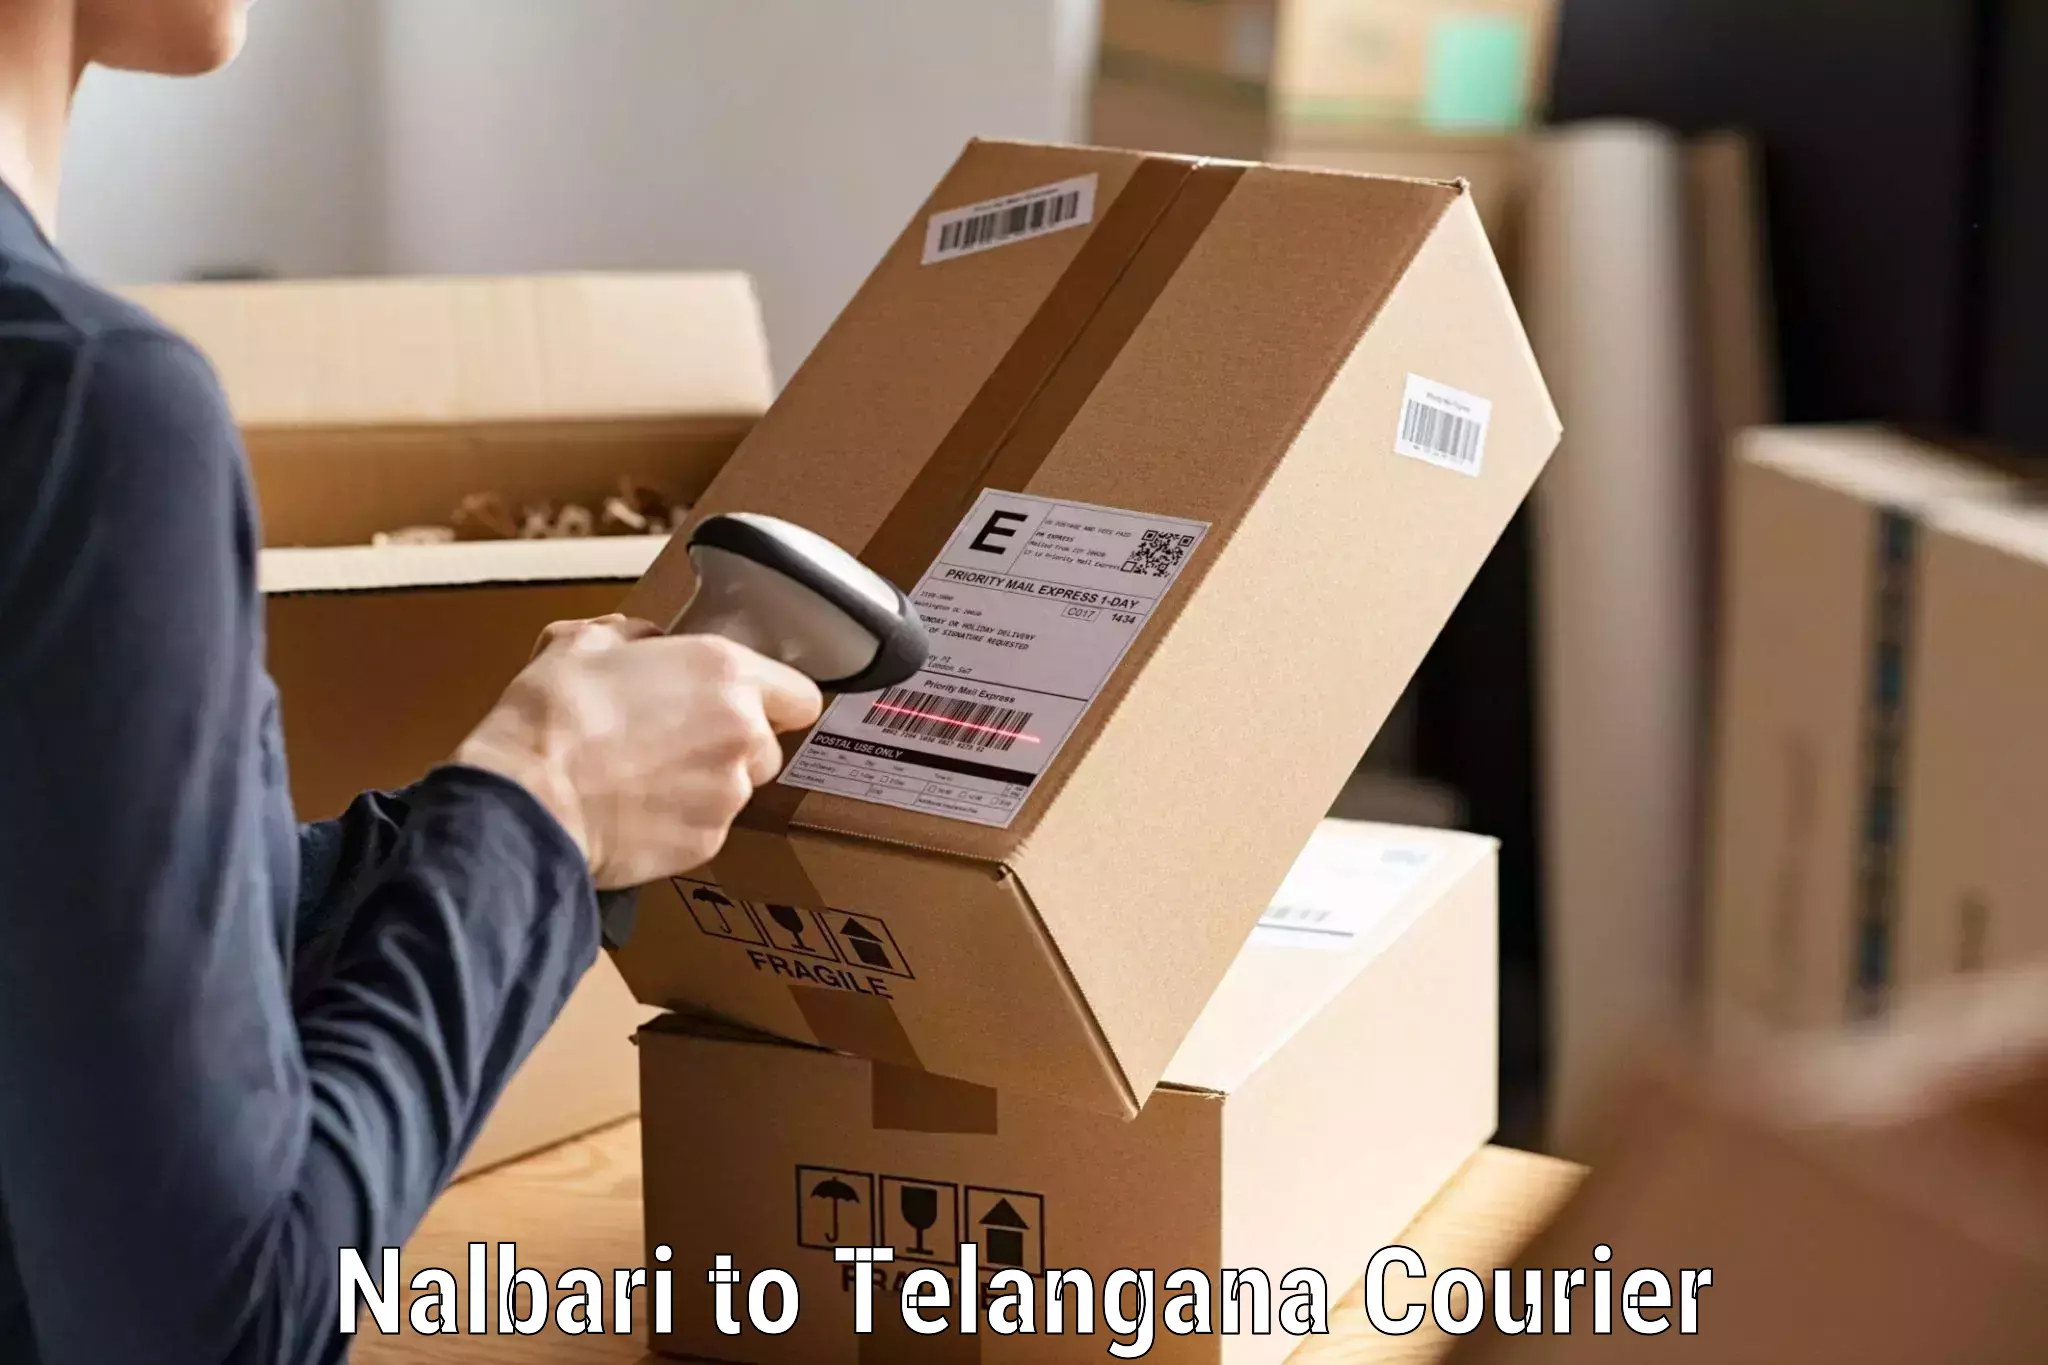 Advanced shipping network Nalbari to Cherla